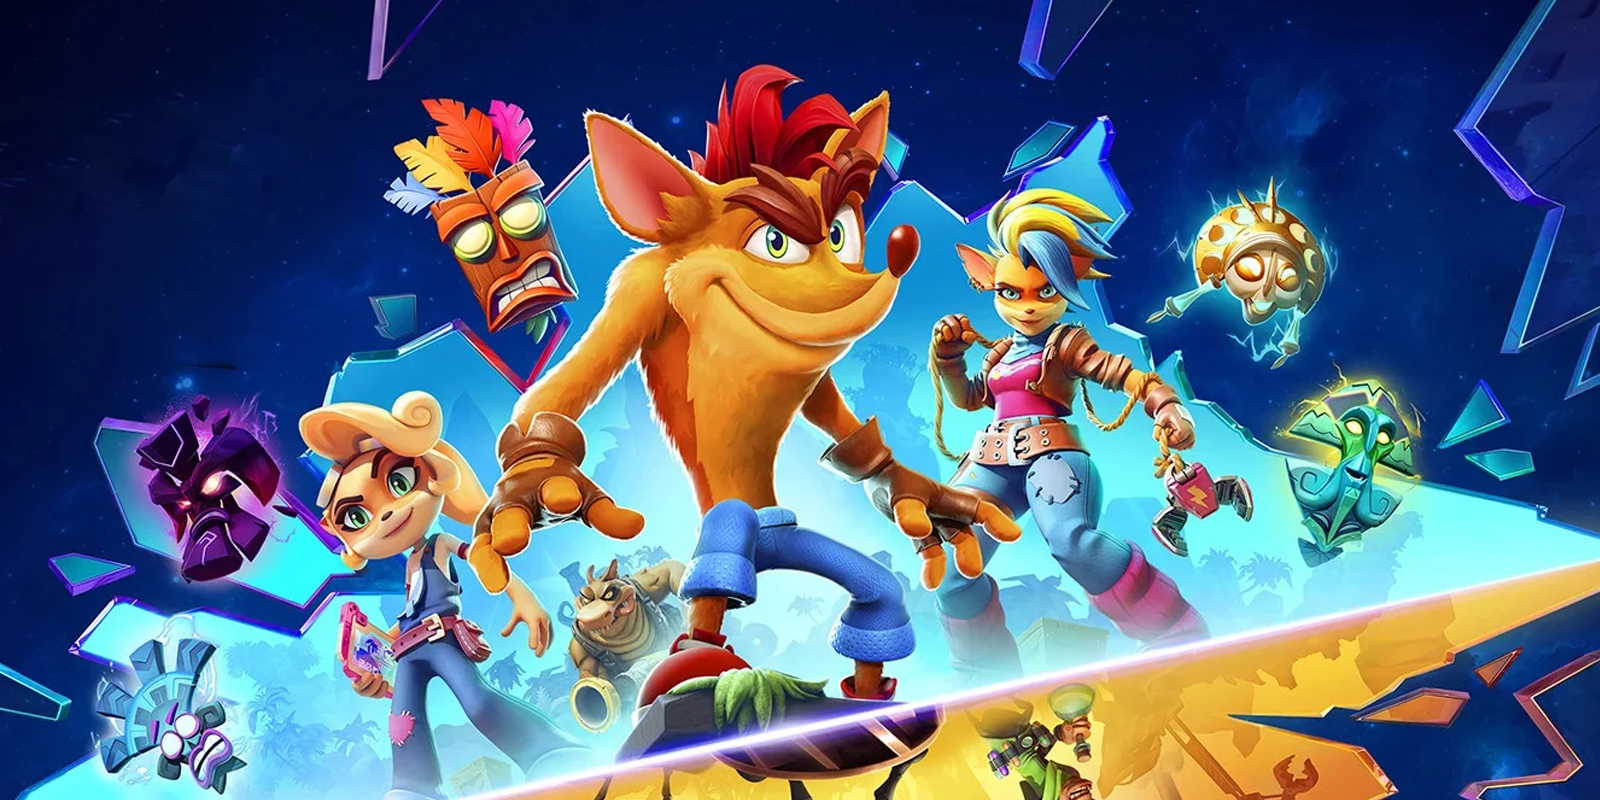 Los desarrolladores de Crash Bandicoot siguen esperando que llegue a Super  Smash Bros. Ultimate